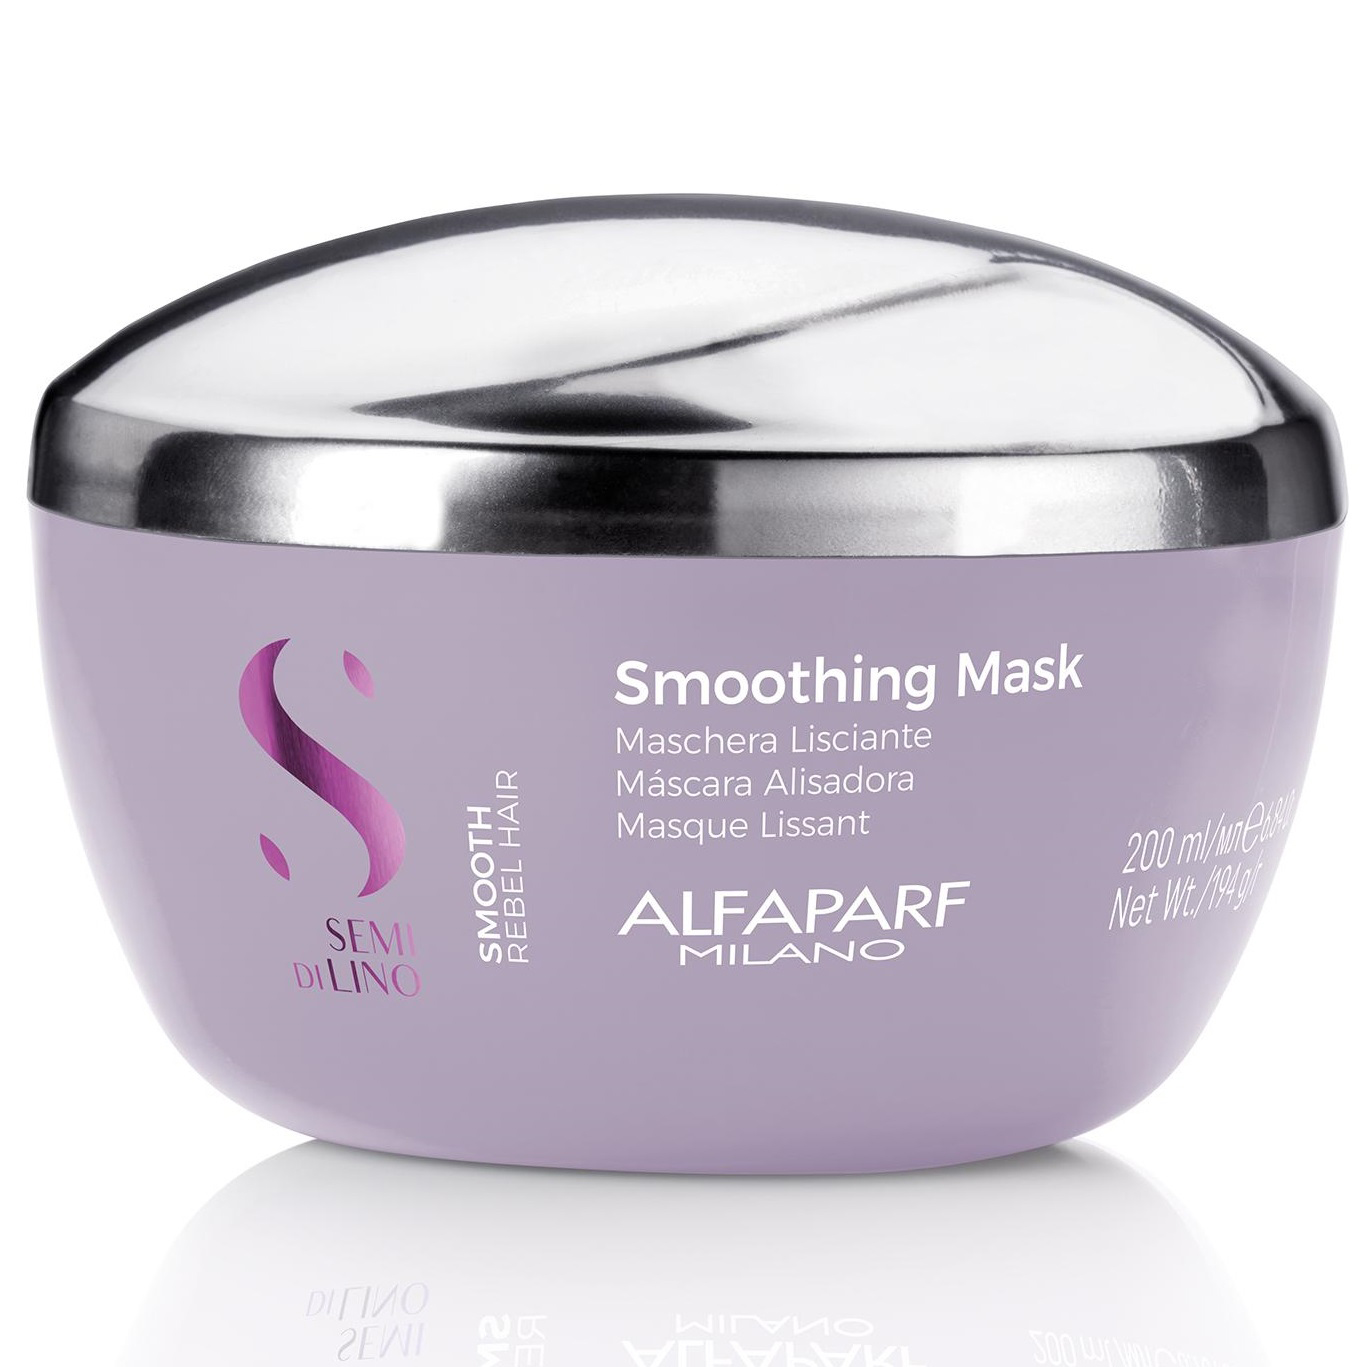 Alfaparf Milano Разглаживающая маска для непослушных волос, 200 мл (Alfaparf Milano, SDL Smoothing) alfaparf milano smoothing разглаживающая маска 500 мл